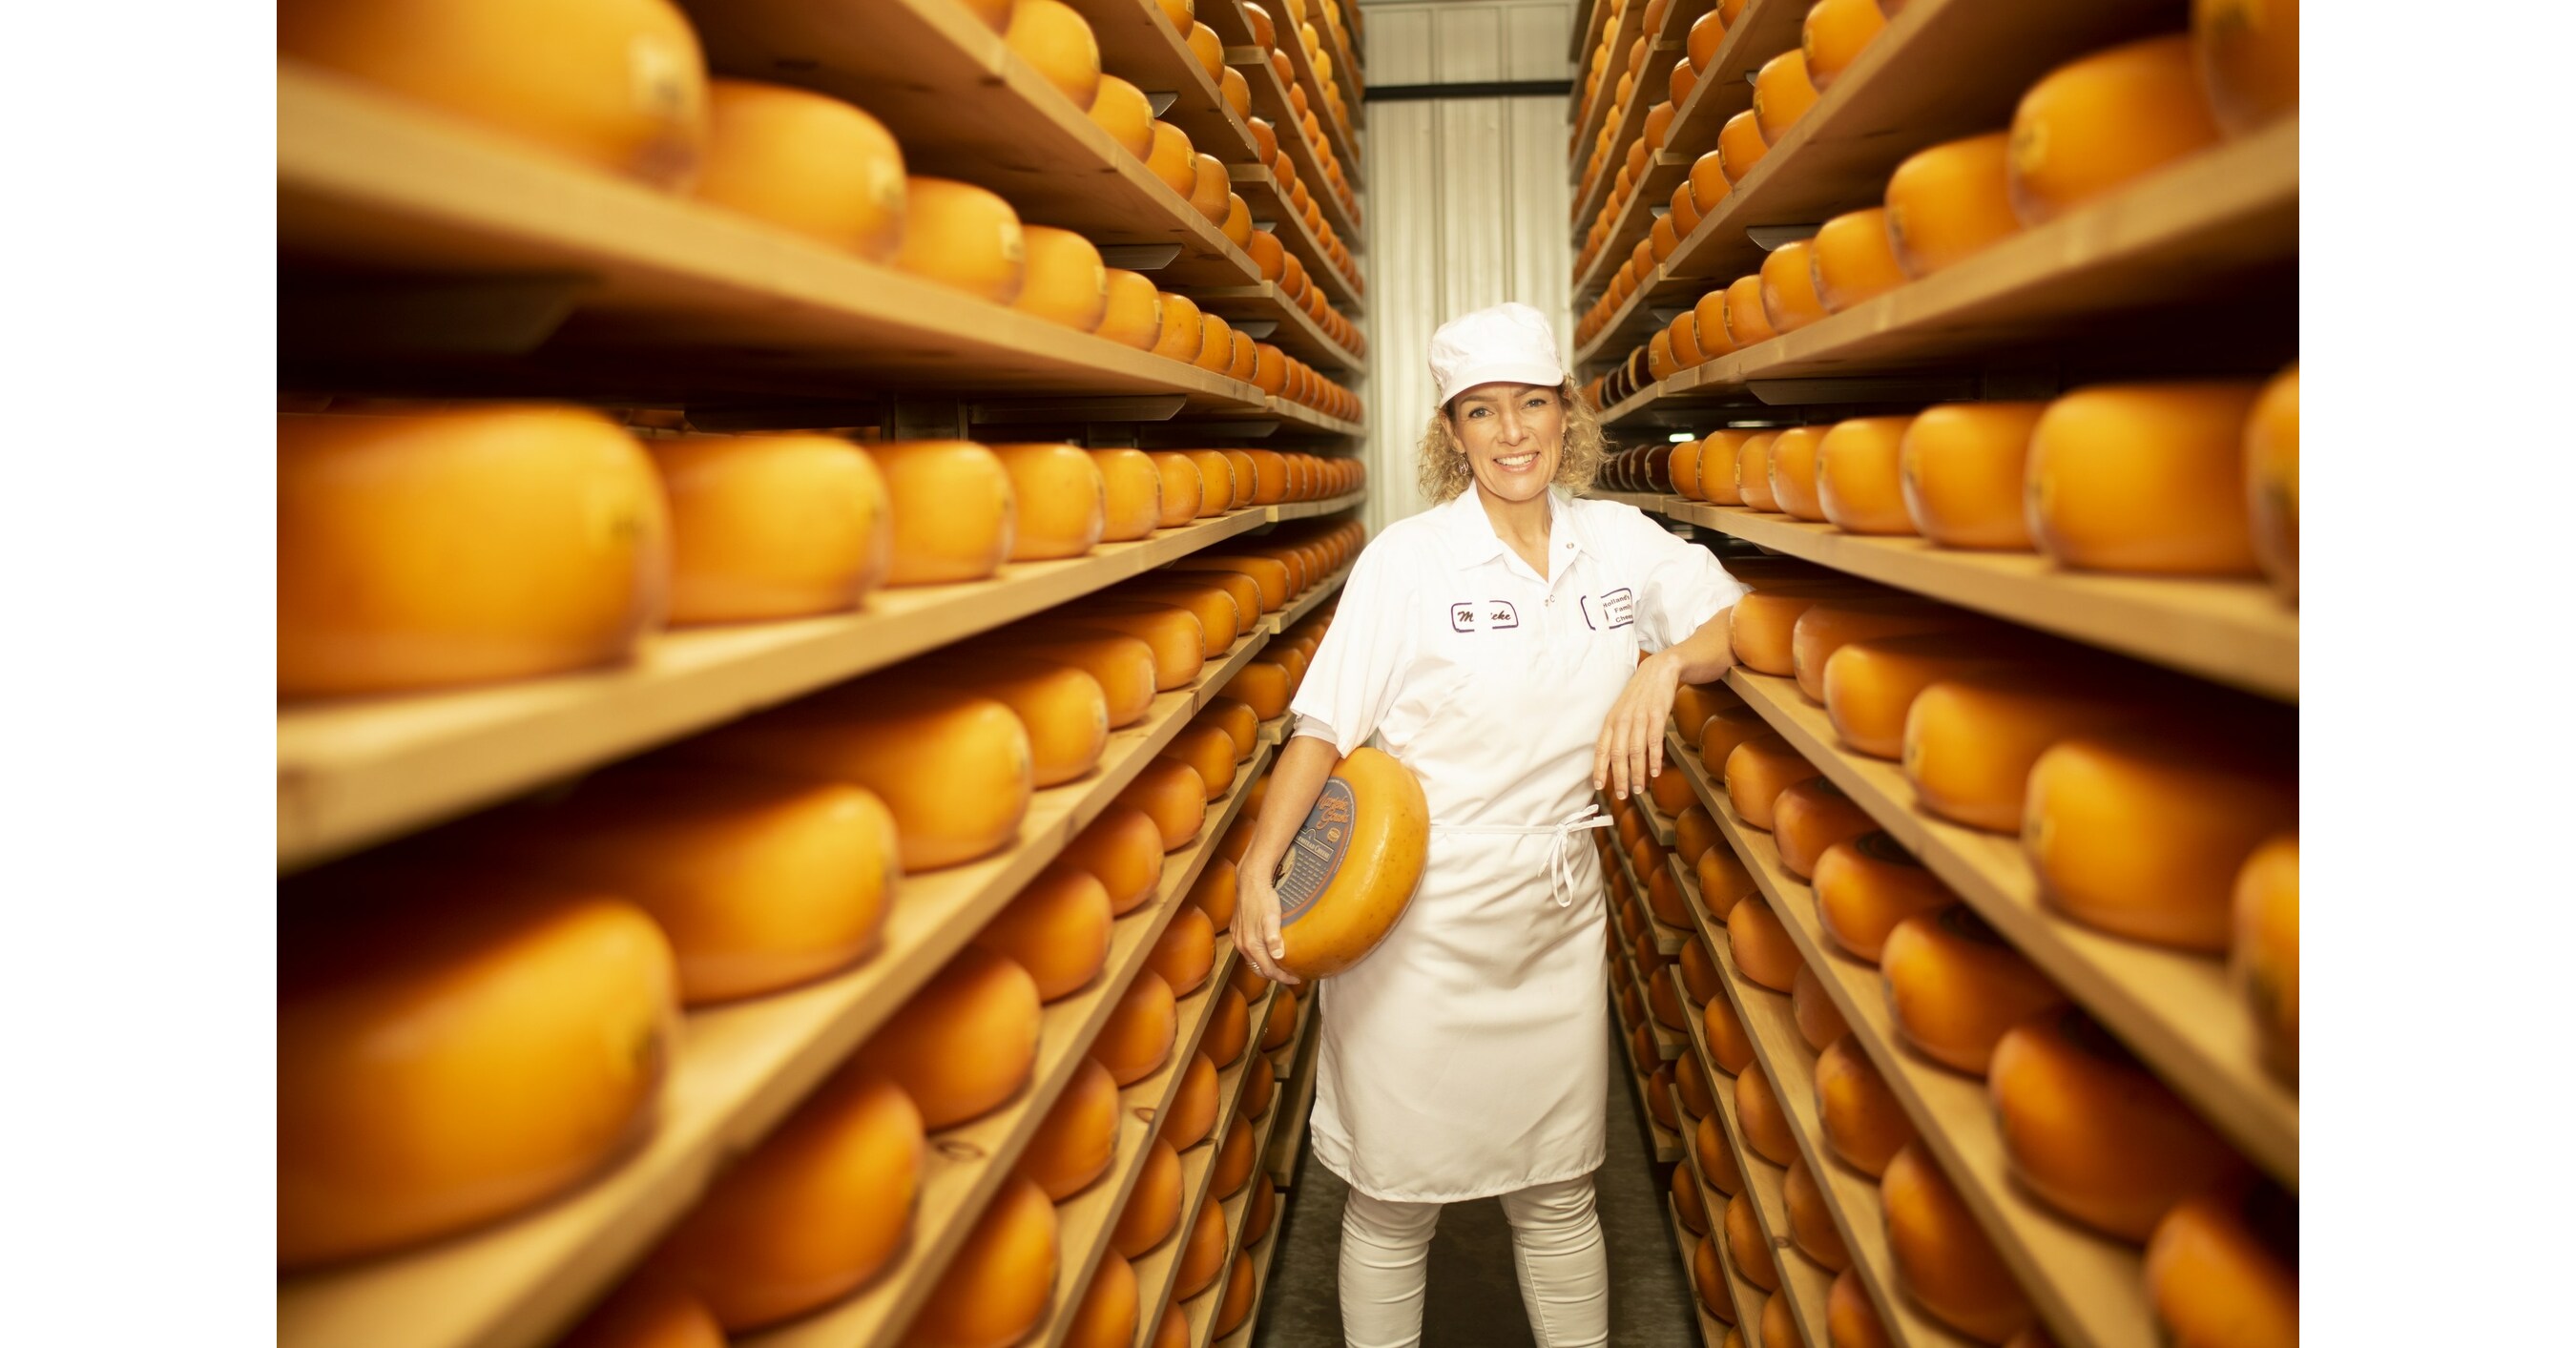 News - Cheesemakers